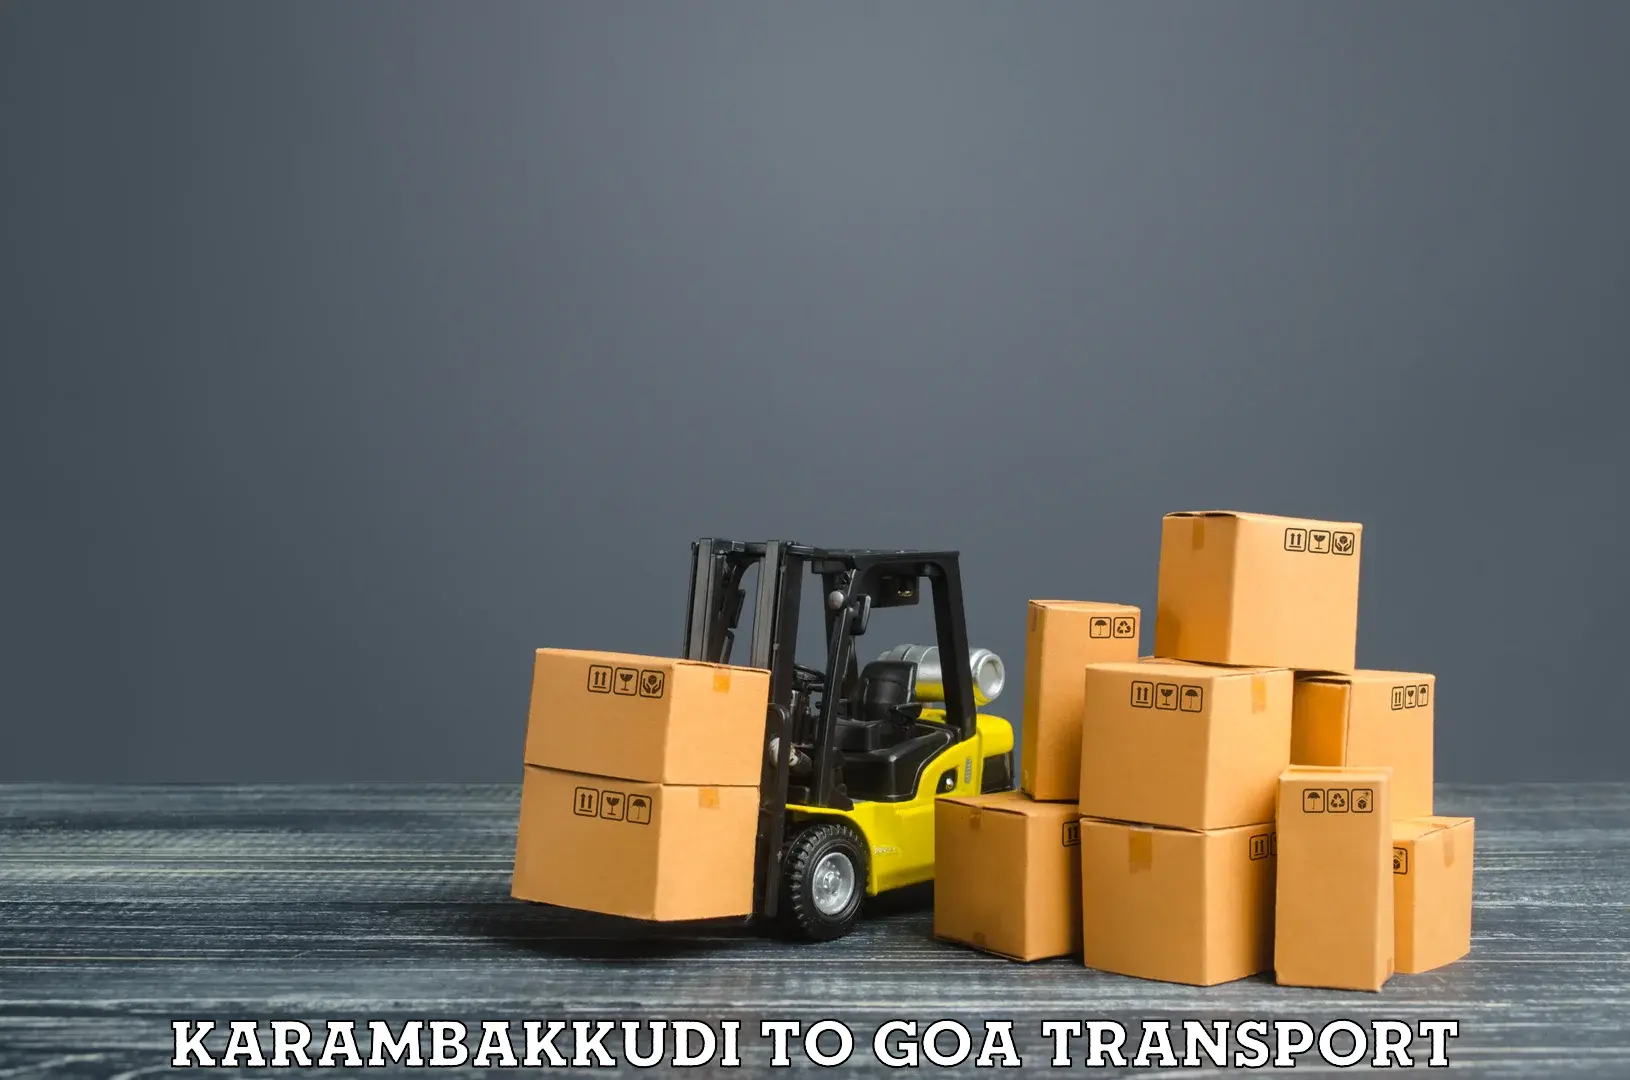 Online transport booking Karambakkudi to IIT Goa